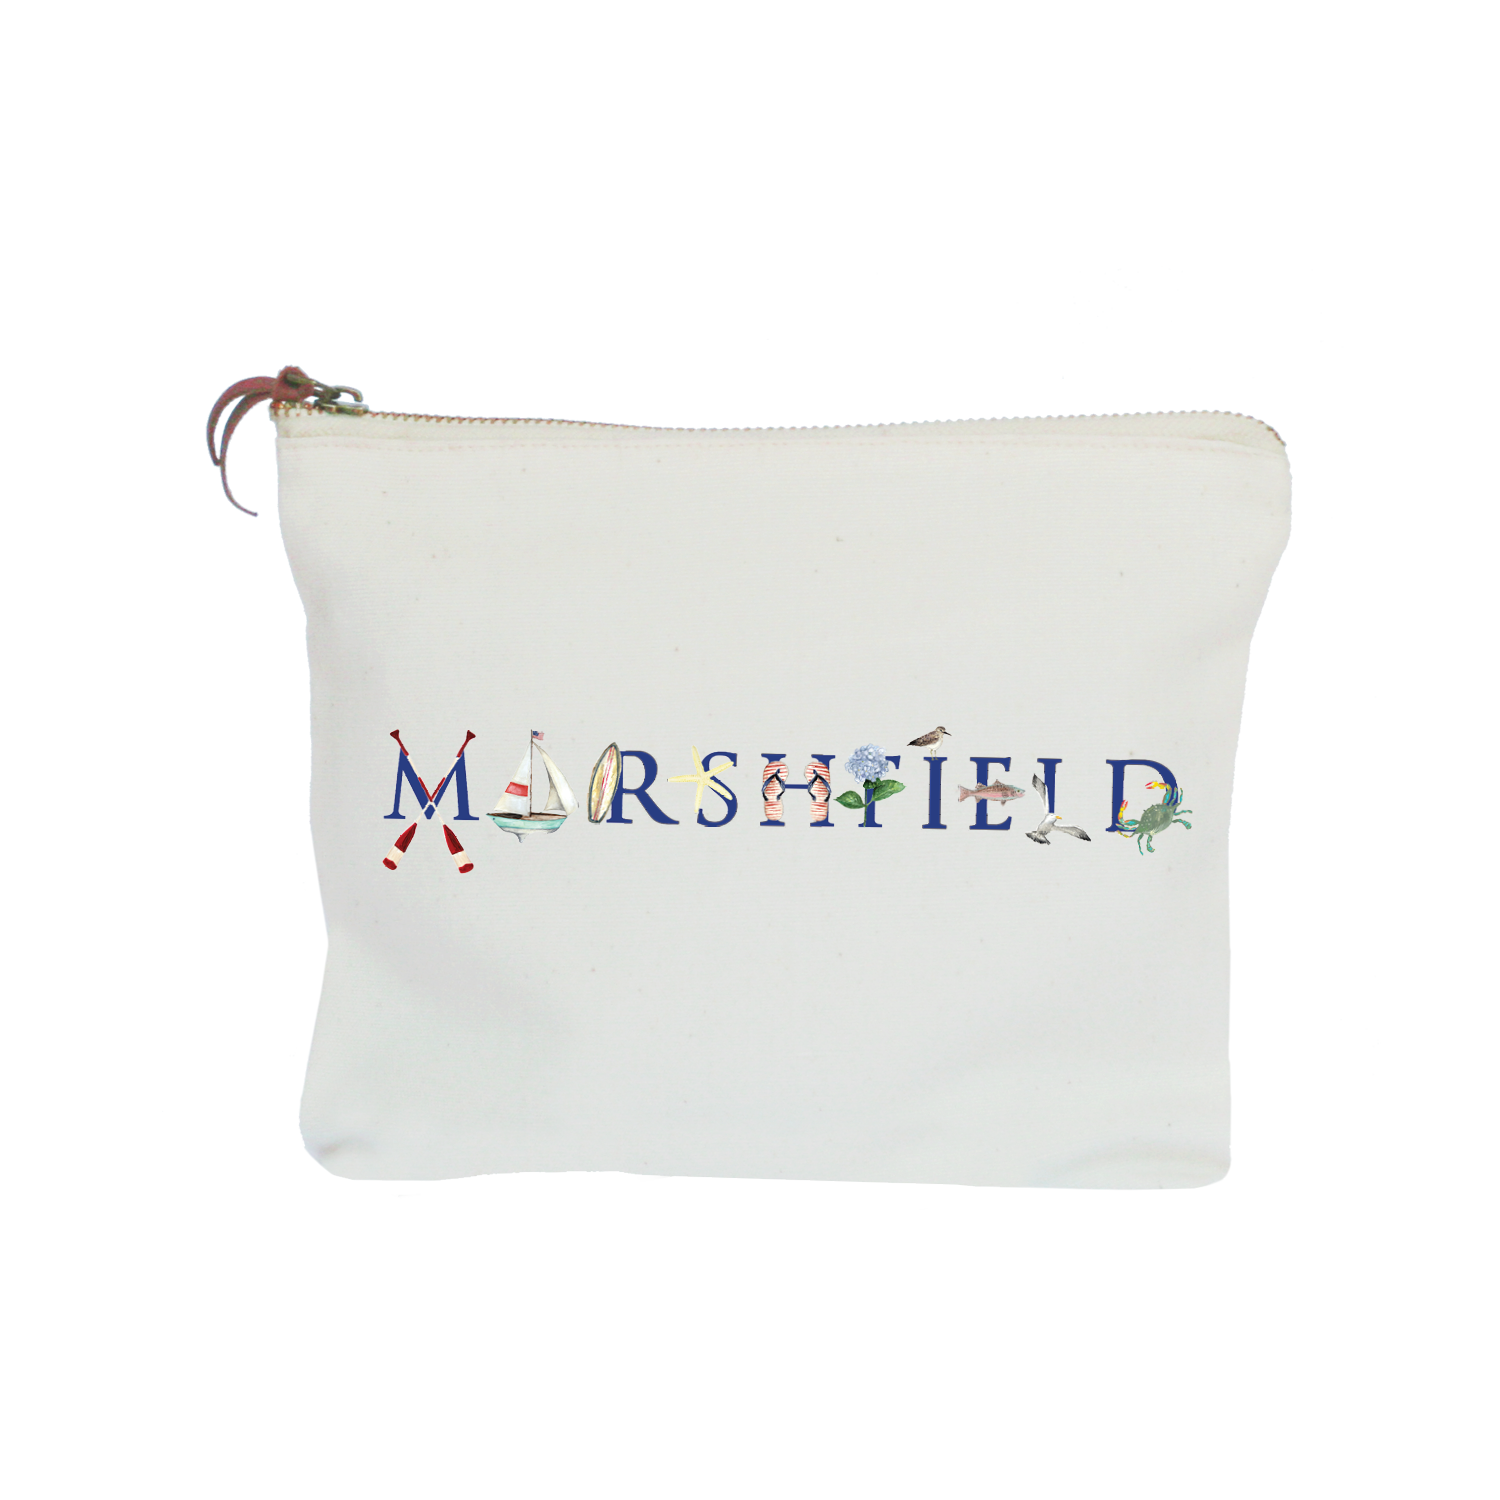 Marshfield zipper pouch